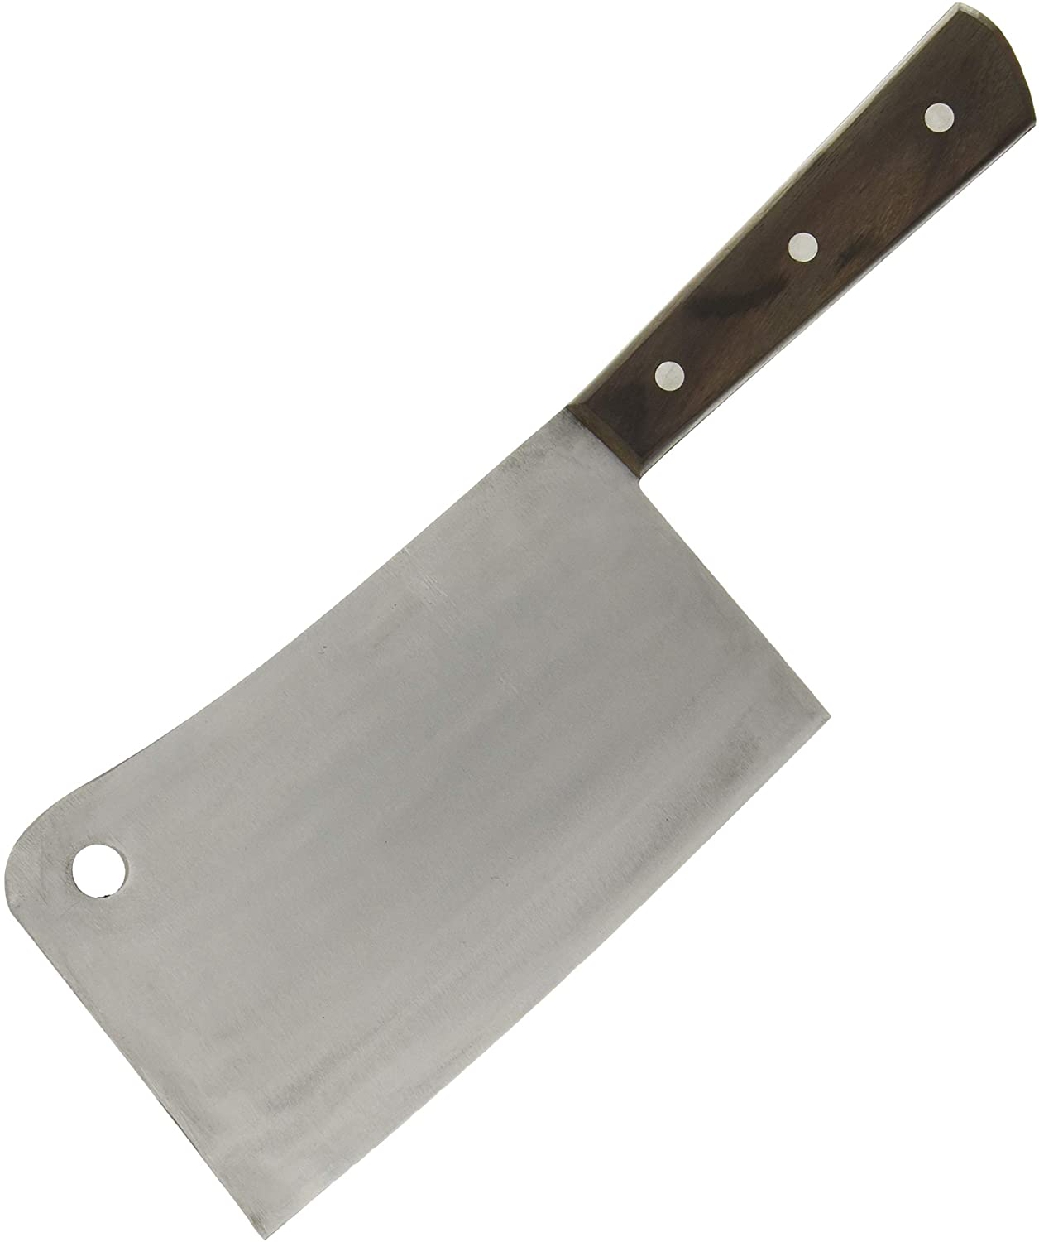 江部松(EBM) クレーバーナイフ 18cmの商品画像1 